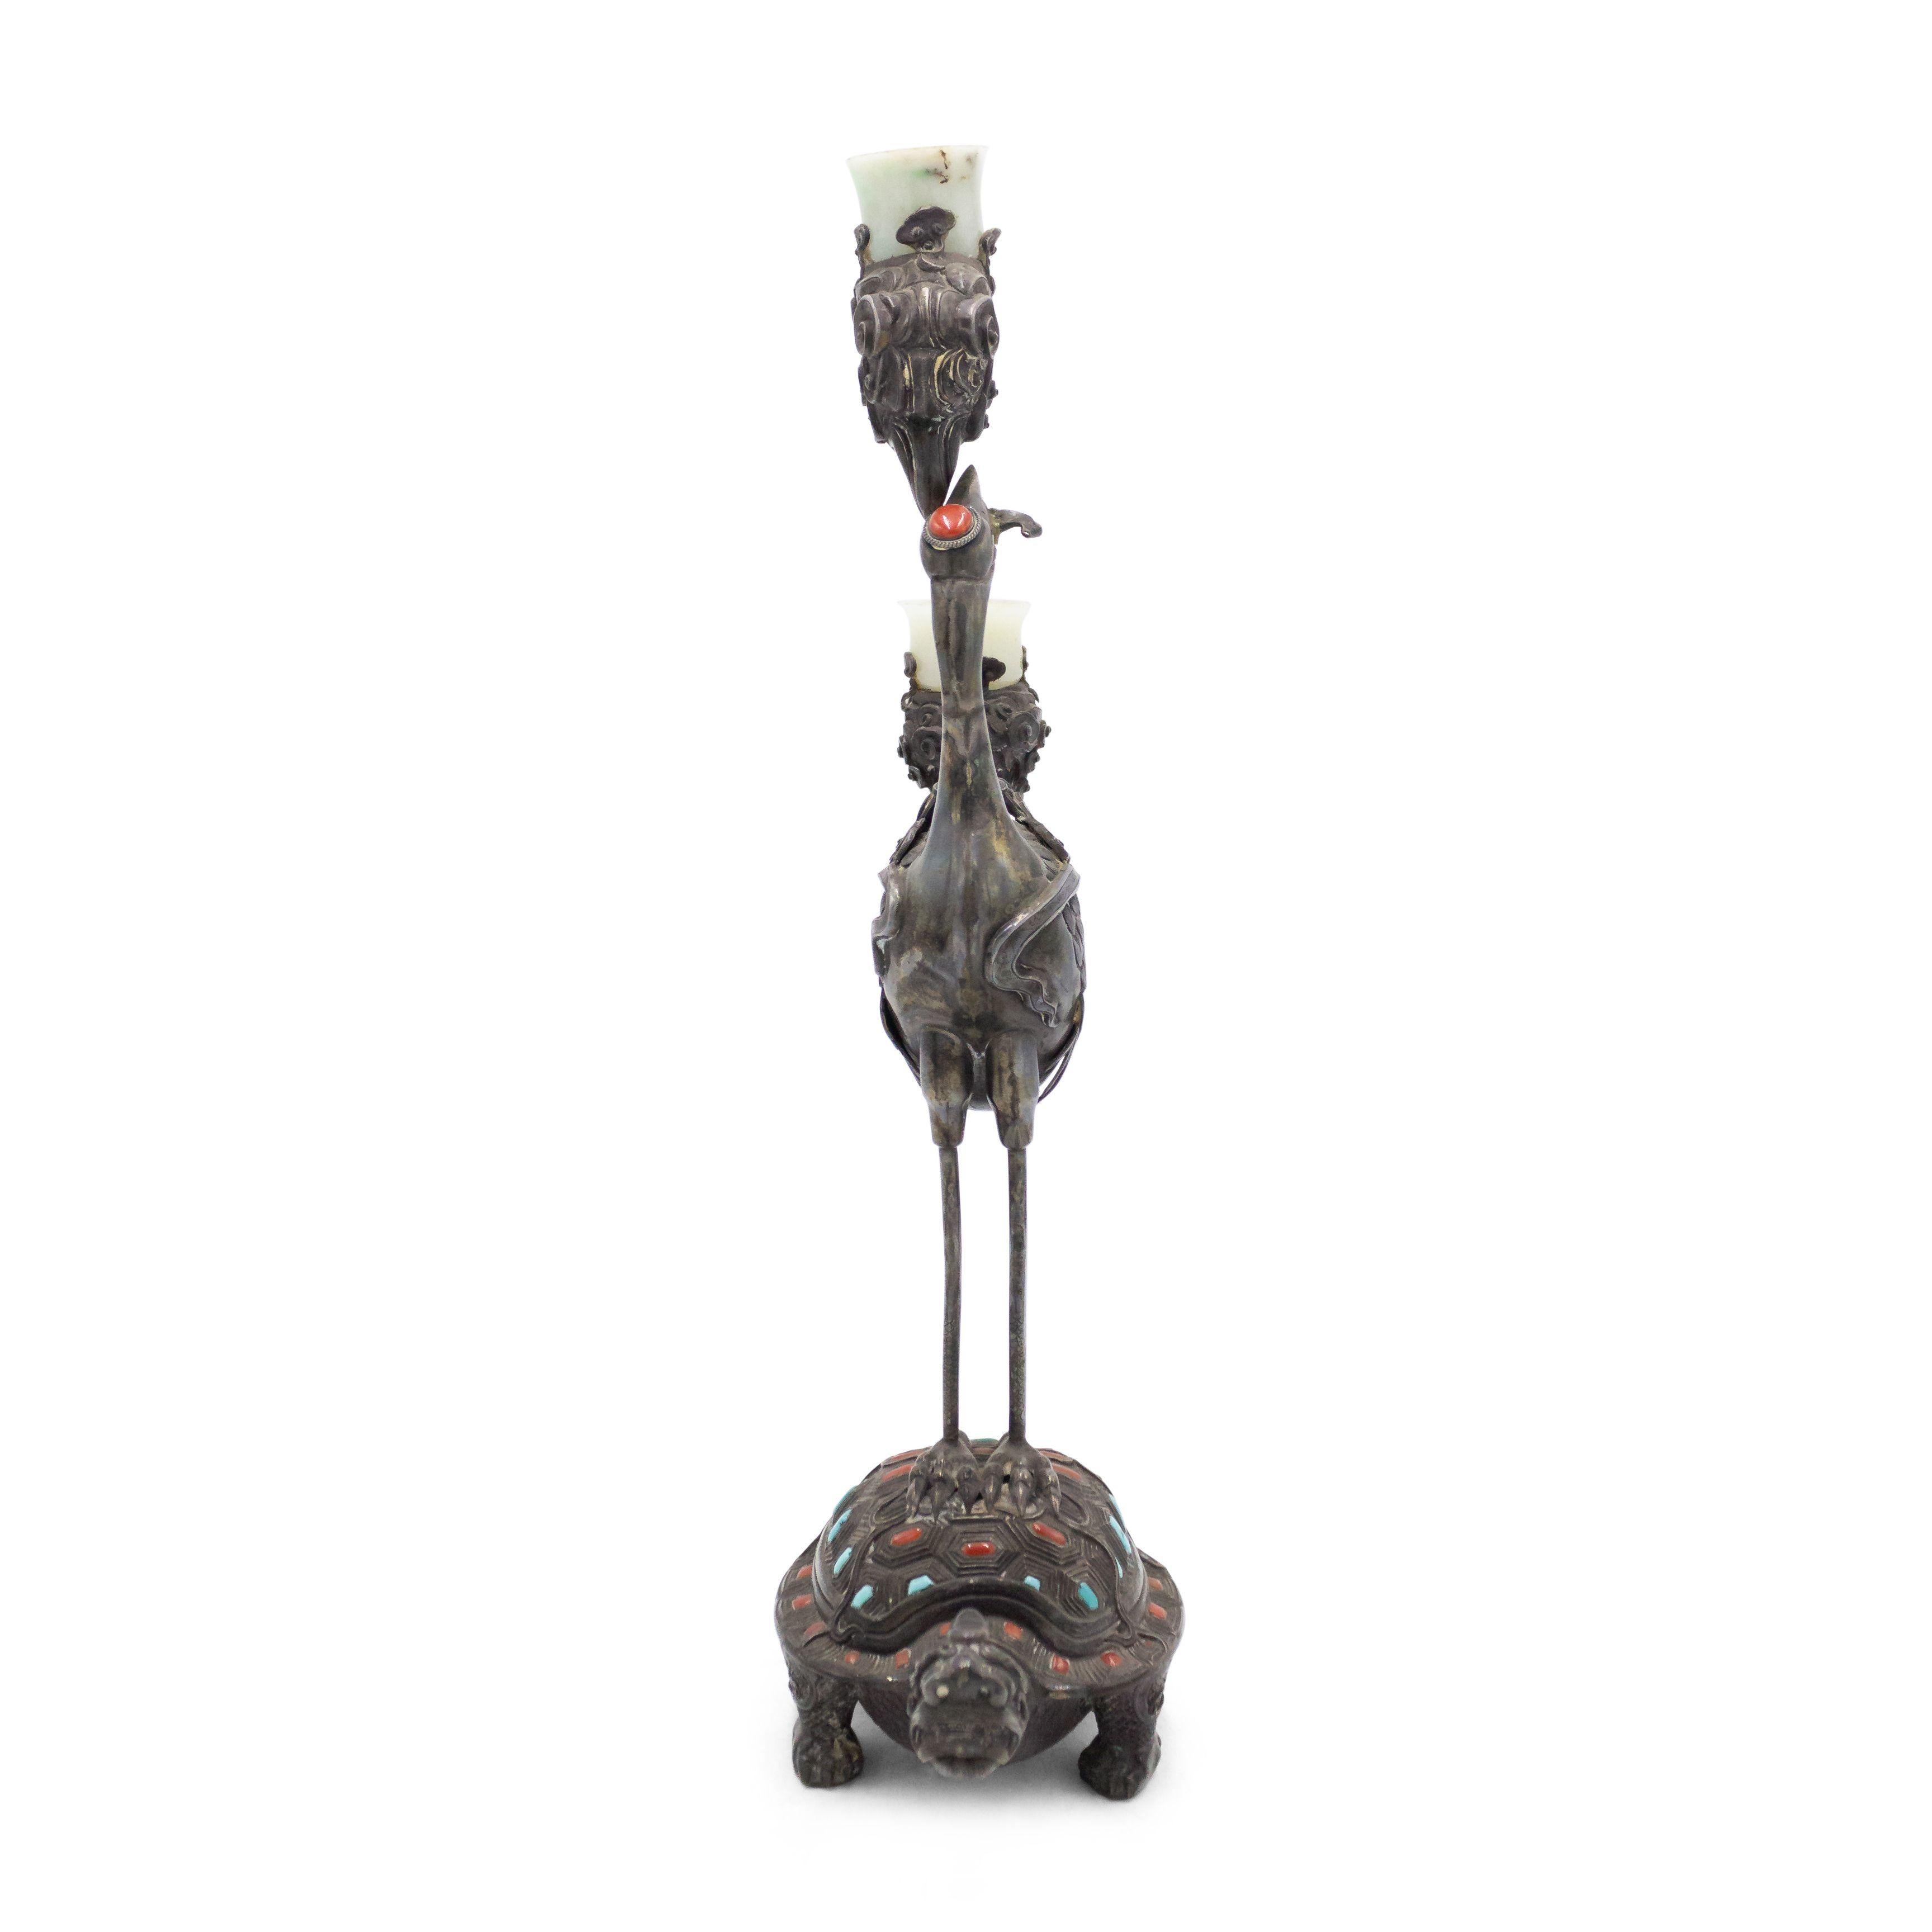 Paire de candélabres à deux bras en argent de style asiatique chinois (19e siècle) représentant un héron debout sur une tortue, avec incrustation d'émail turquoise et rouille. (PRIX PAR PAIRE).
 